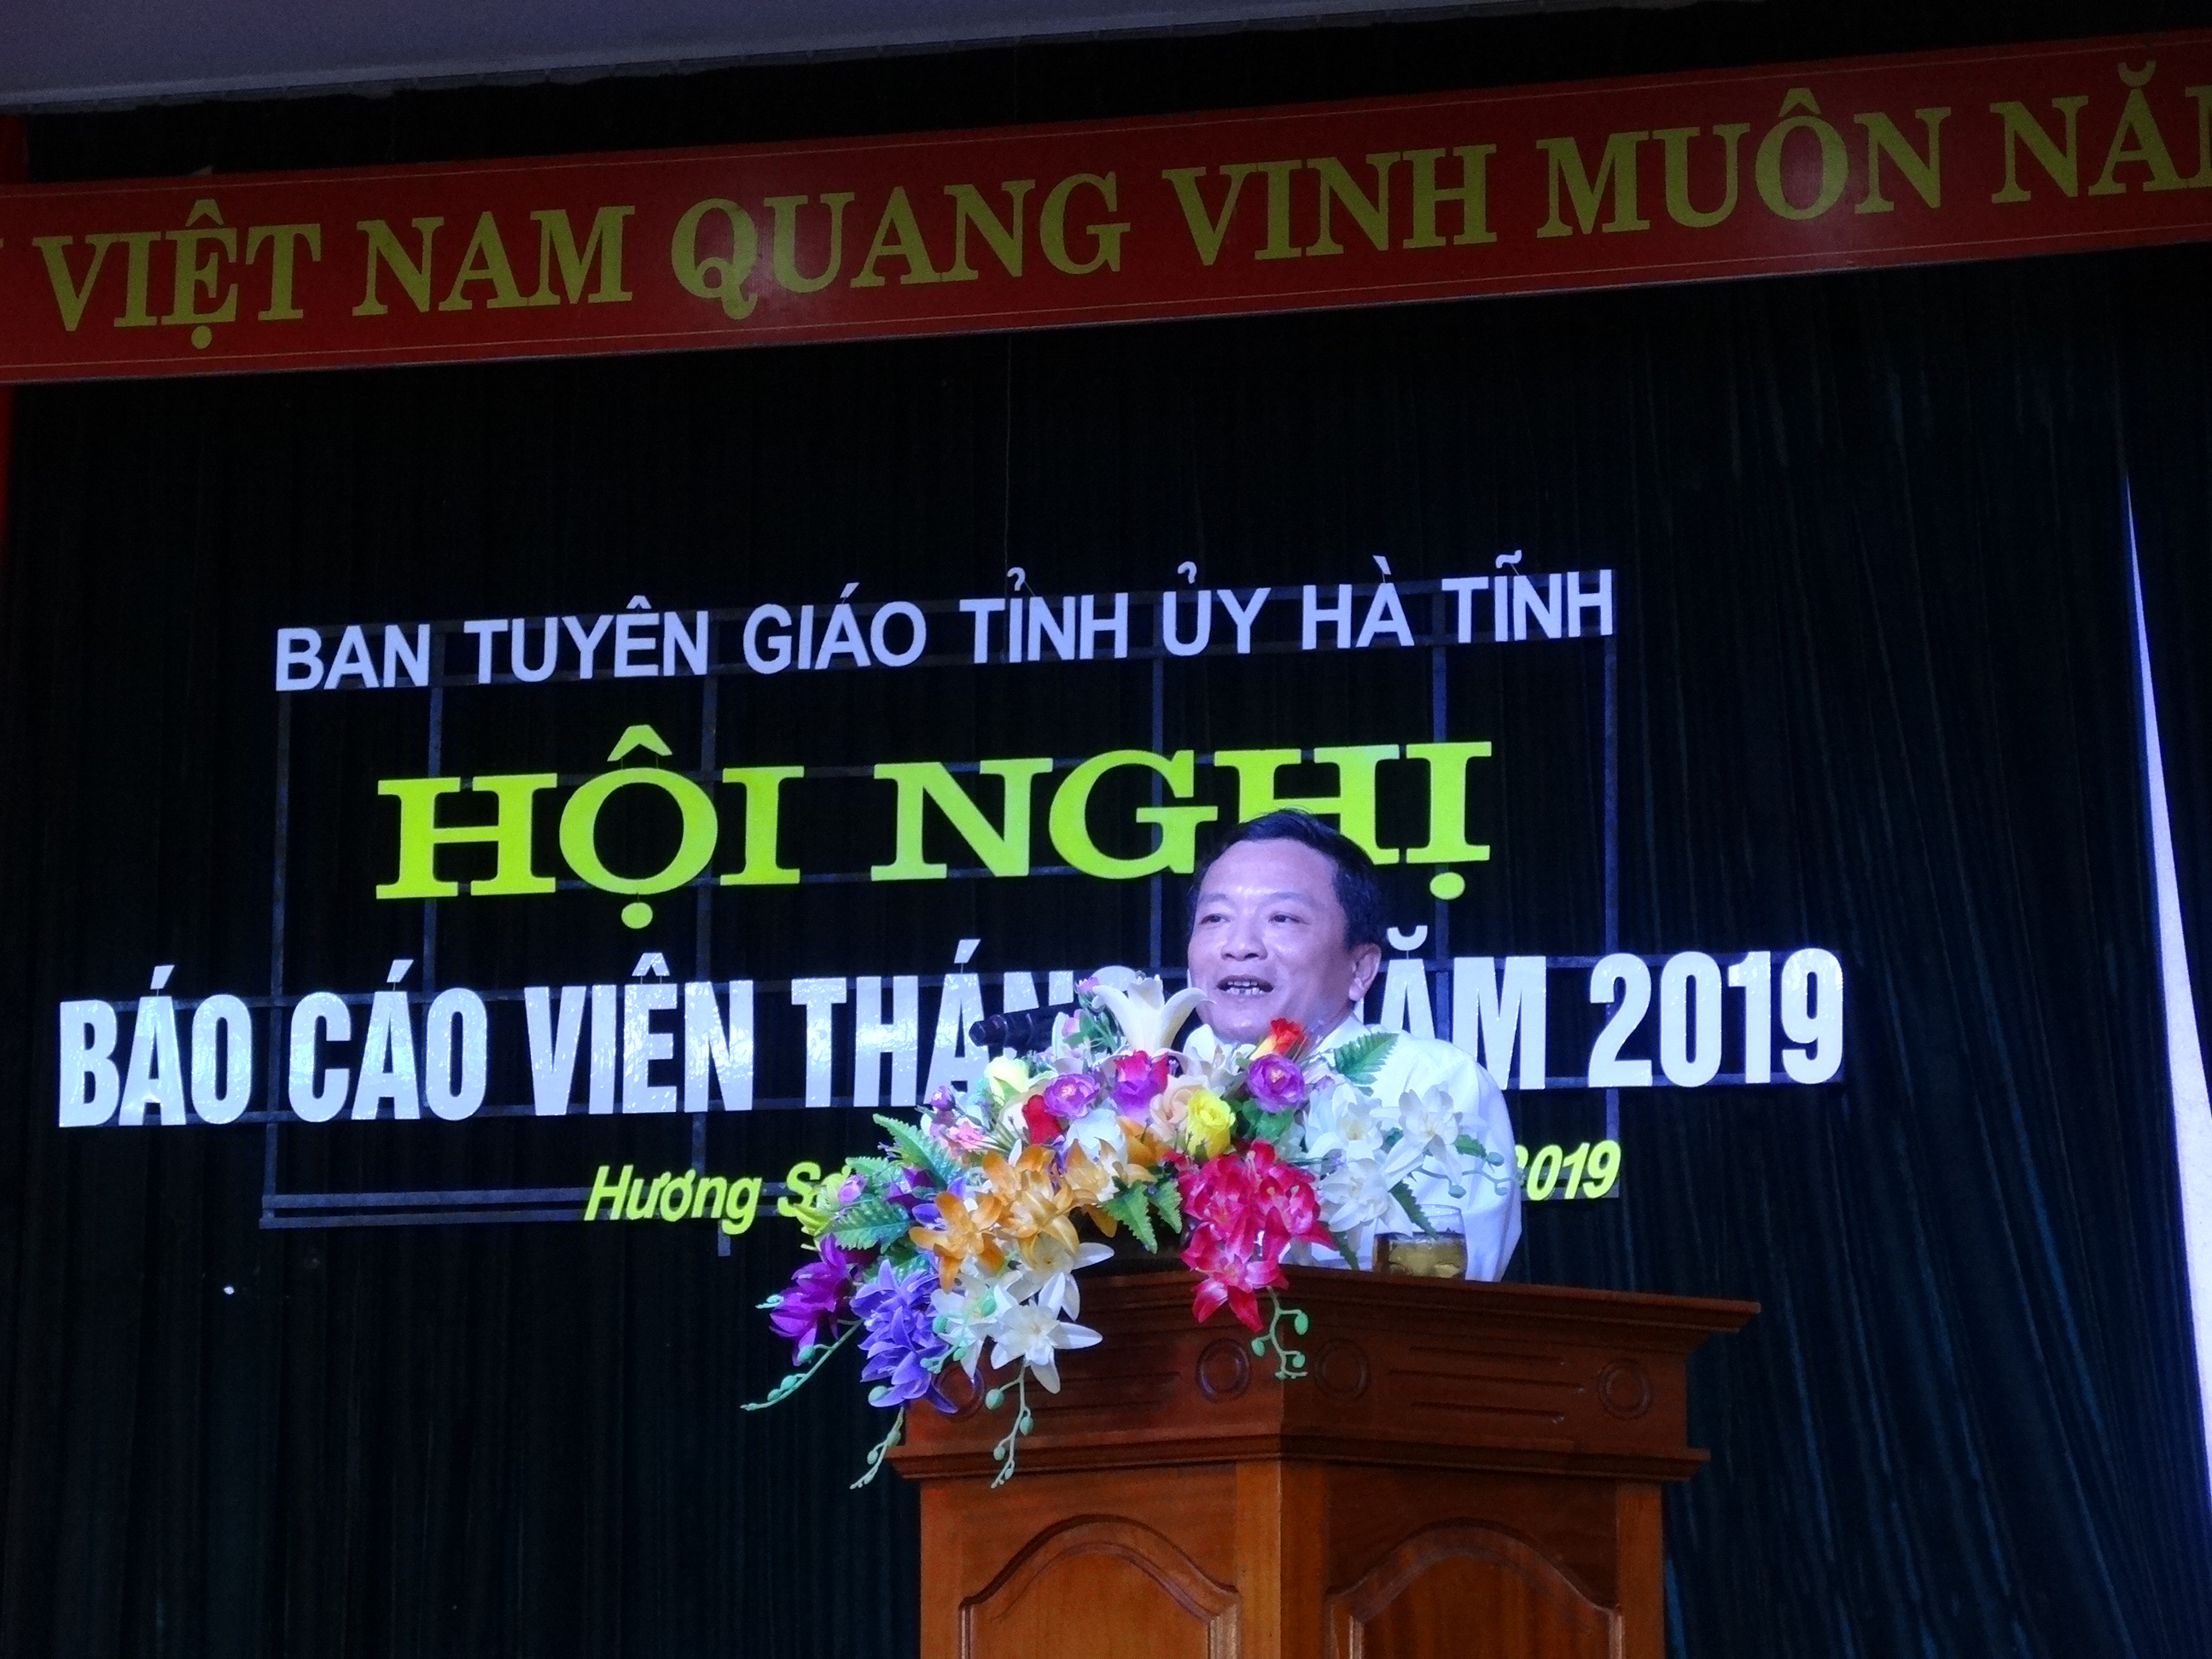 Đồng chí Trần Văn Kỳ, Tỉnh ủy viên, Bí thư Huyện ủy Hương Sơn phát biểu tại Hội nghị